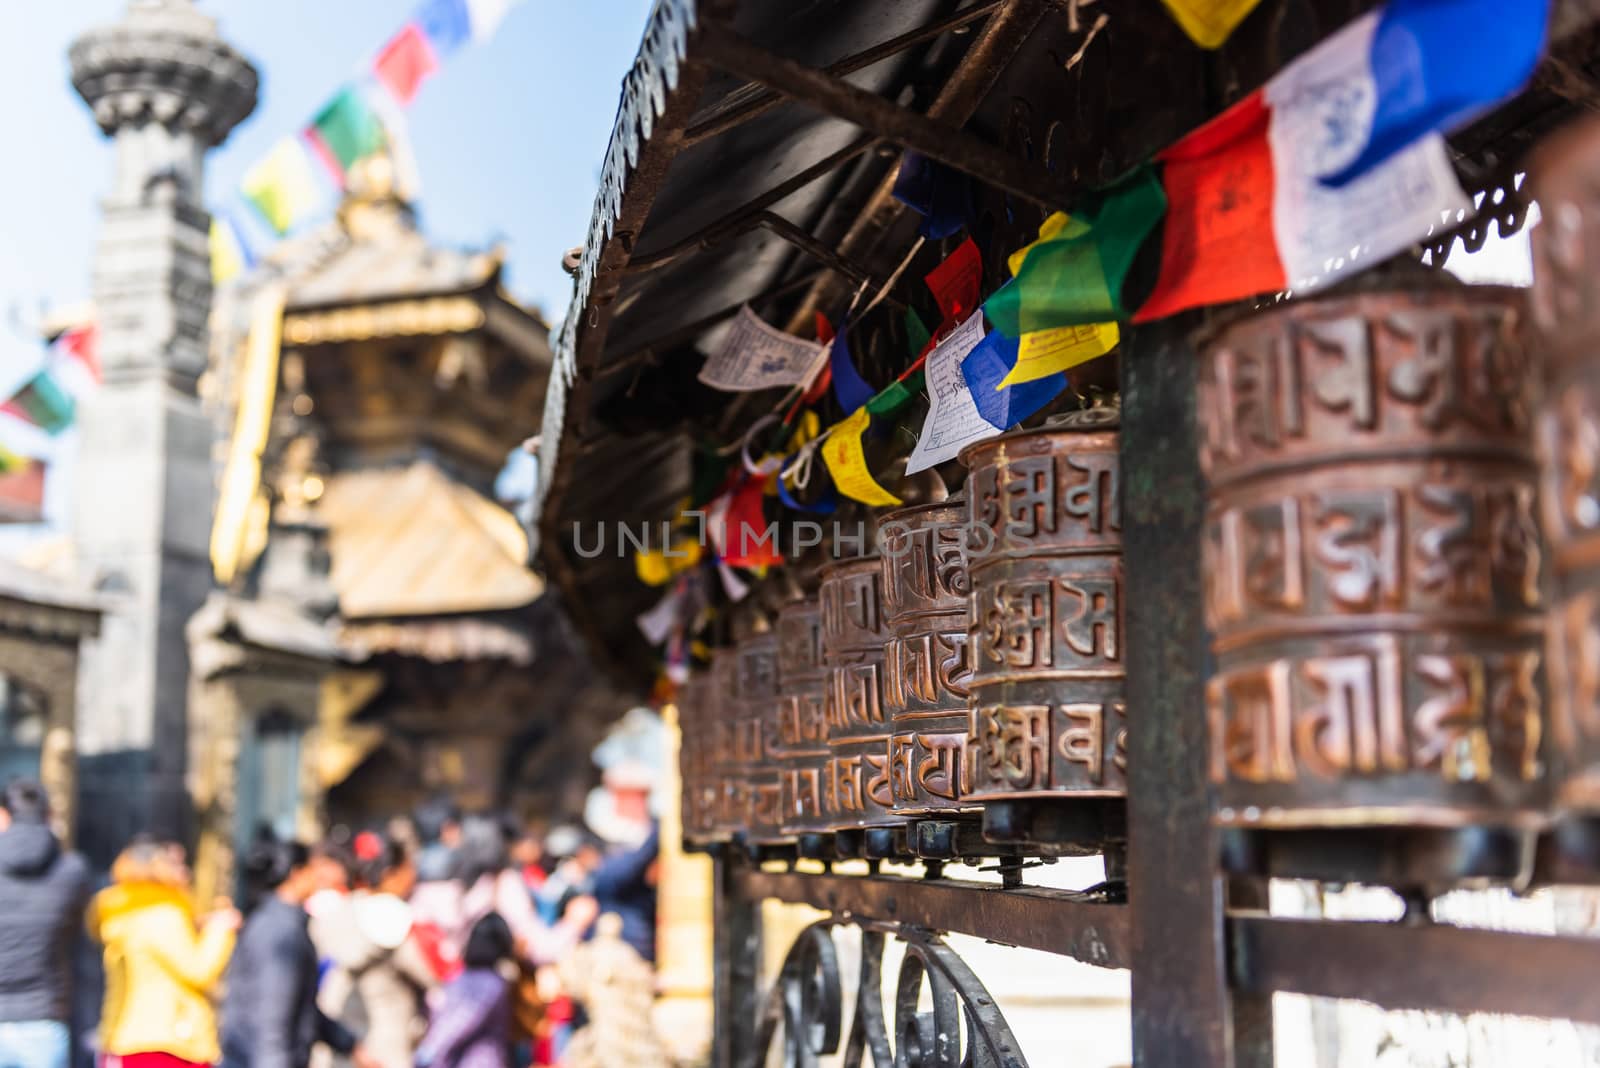 Prayer wheels at Boudhanath Stupa 